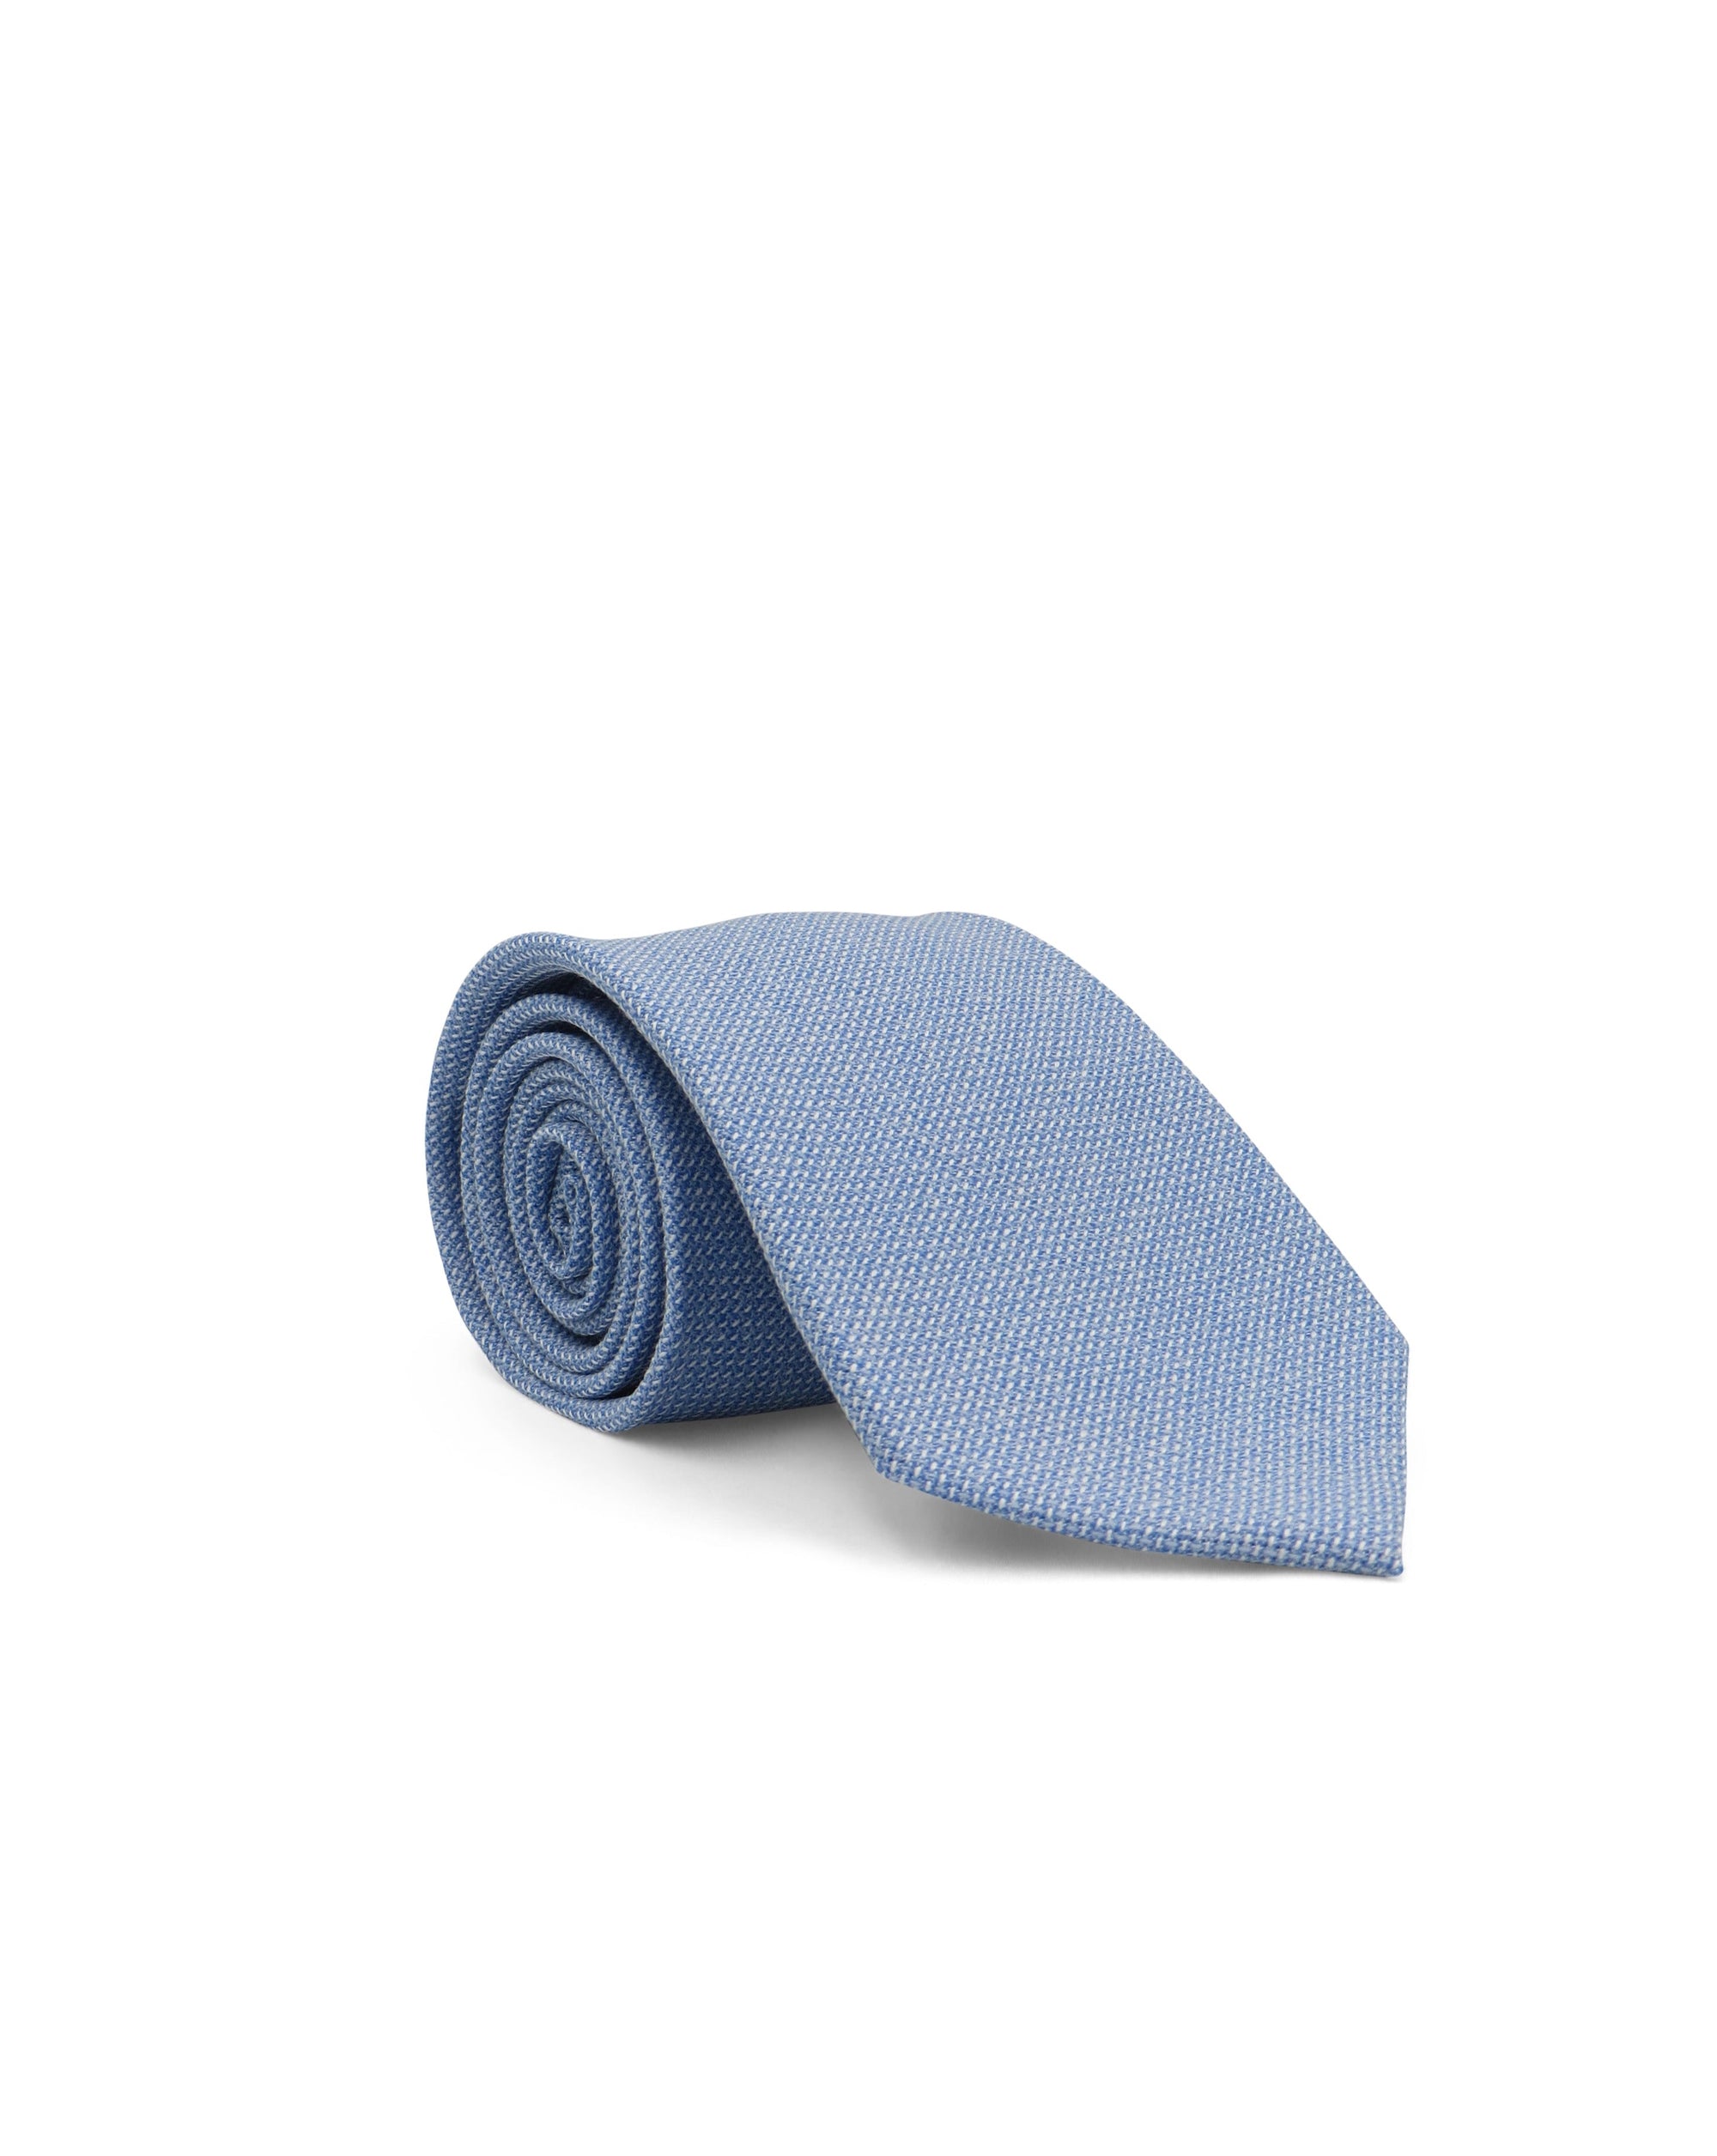 Alder & Green Baby Blue Wool Tie